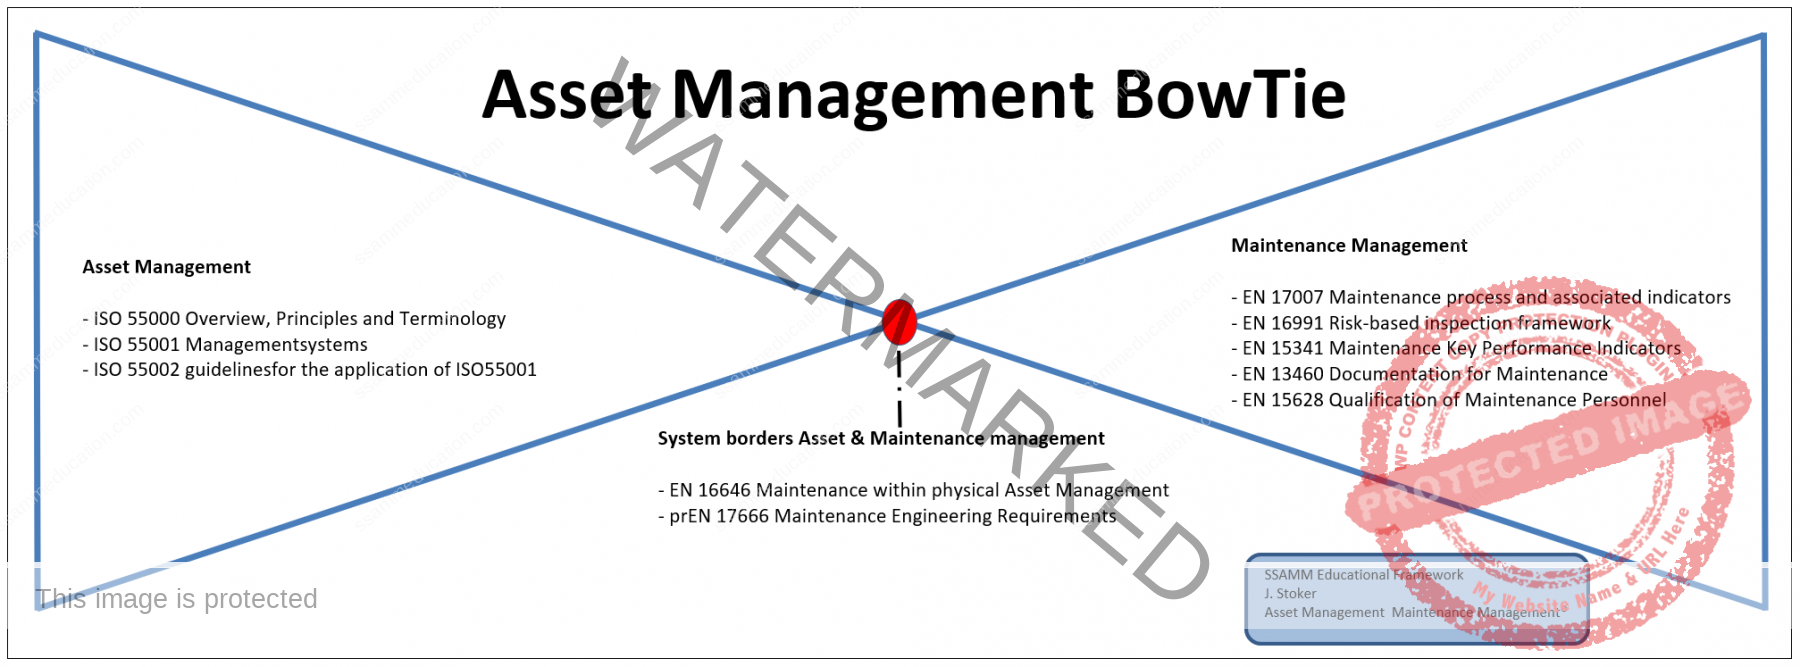 Asset-Management-BowTie-1v0.1